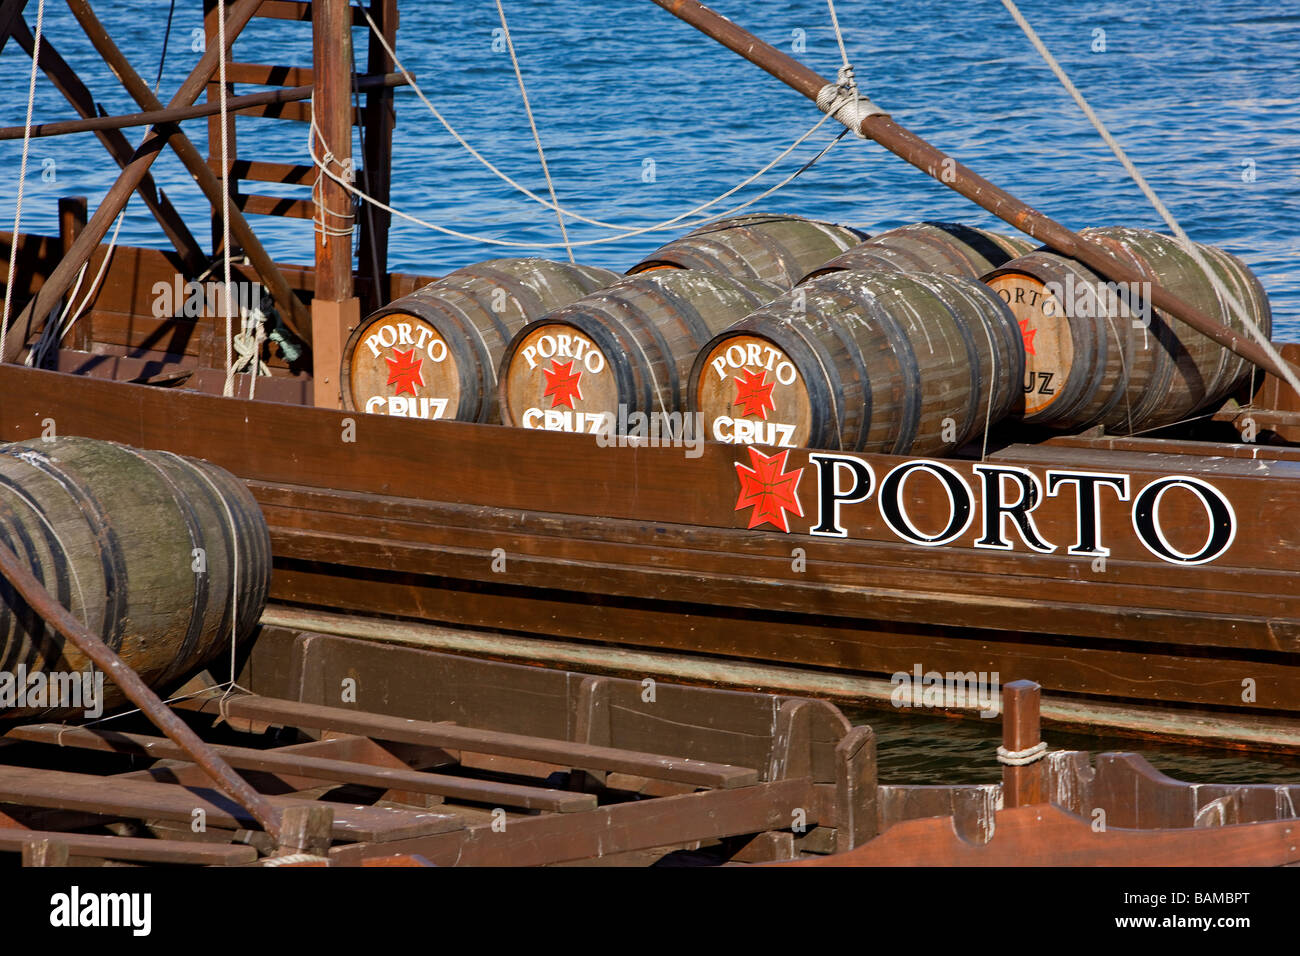 Portugal, Norte region, Porto, Rio Douro,  Rabelo, boat used for the river carriage of Porto wine Stock Photo